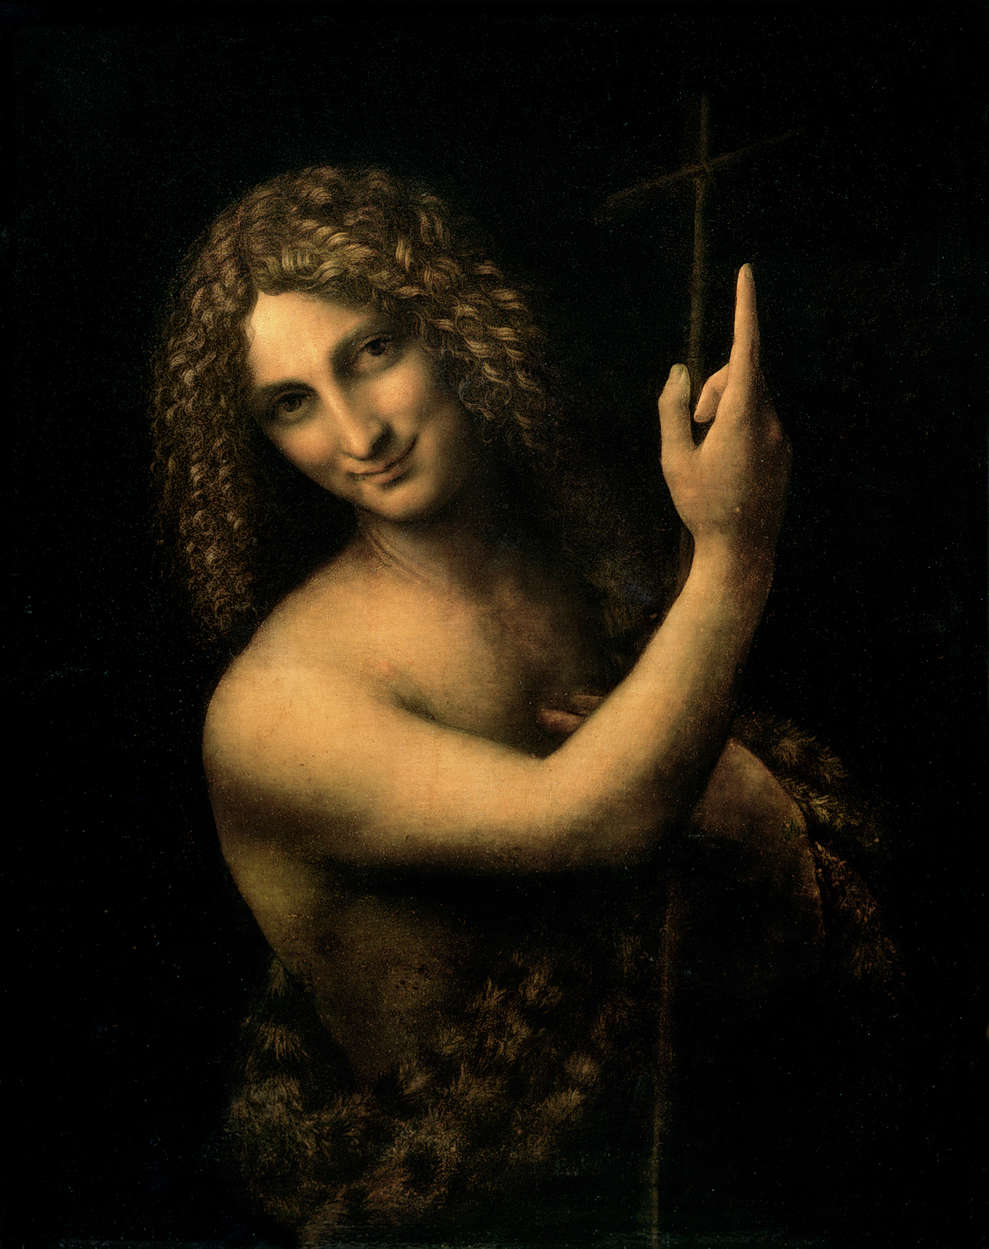             Papier peint panoramique "Jean-Baptiste" de Léonard de Vinci
        